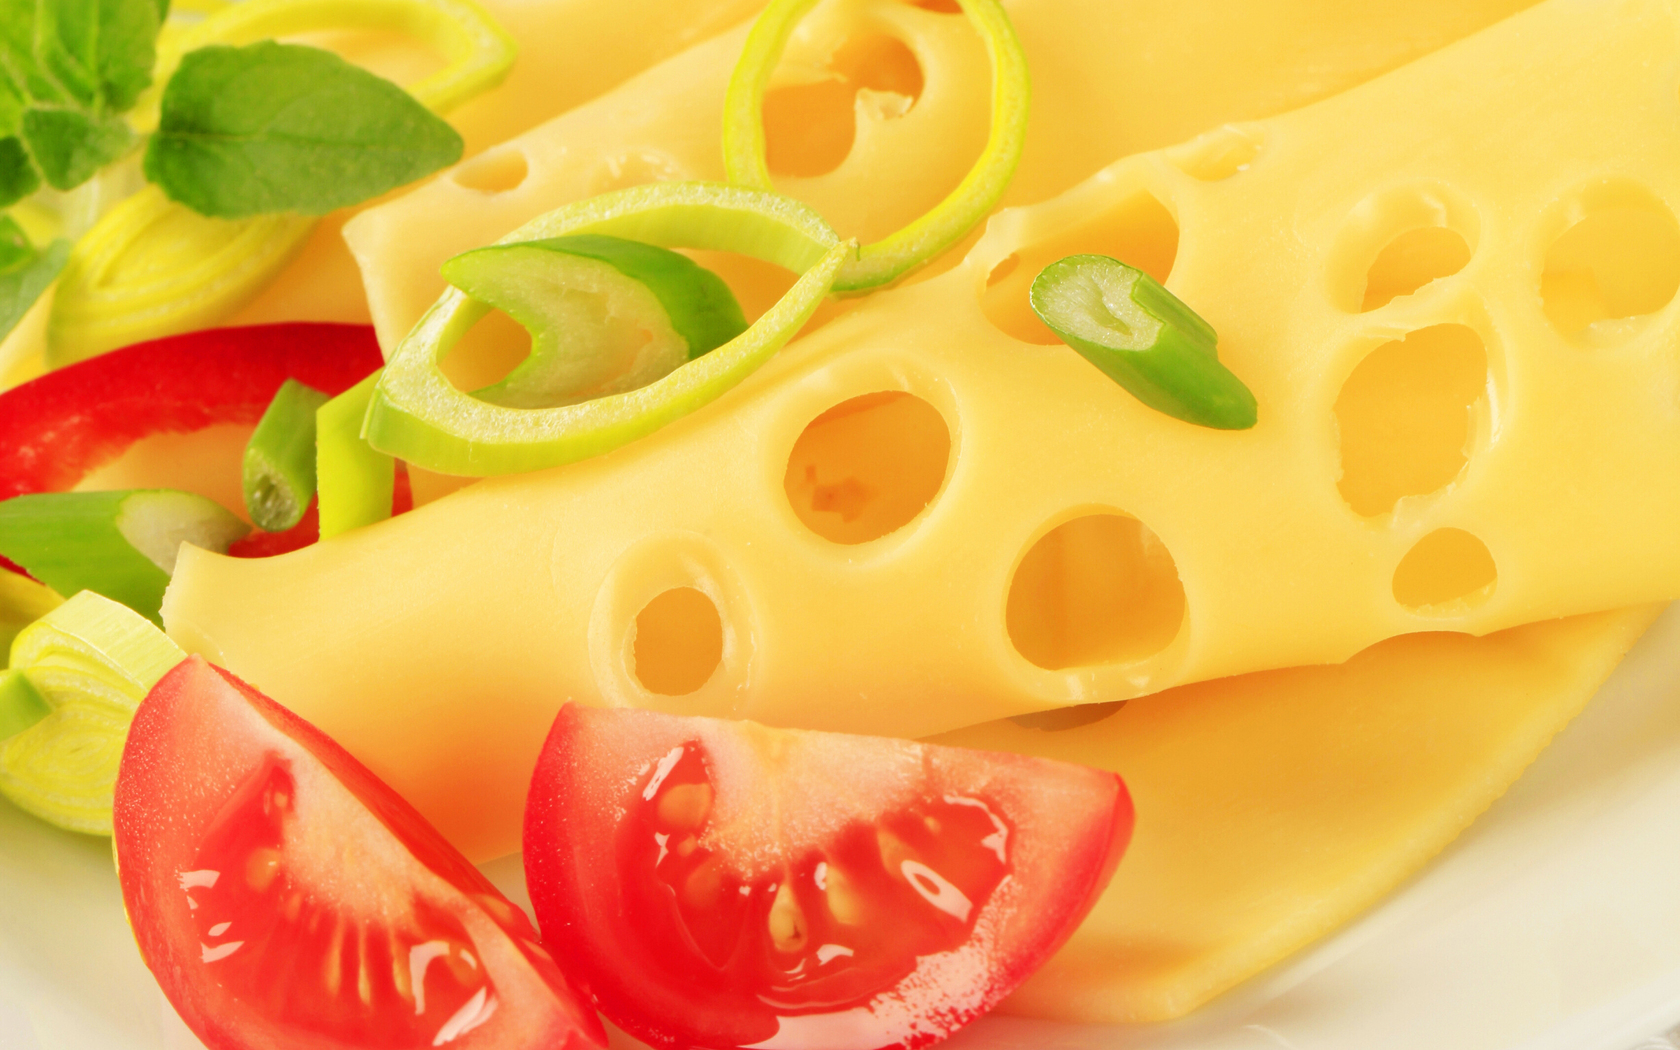 Виды, калорийность и польза сыра